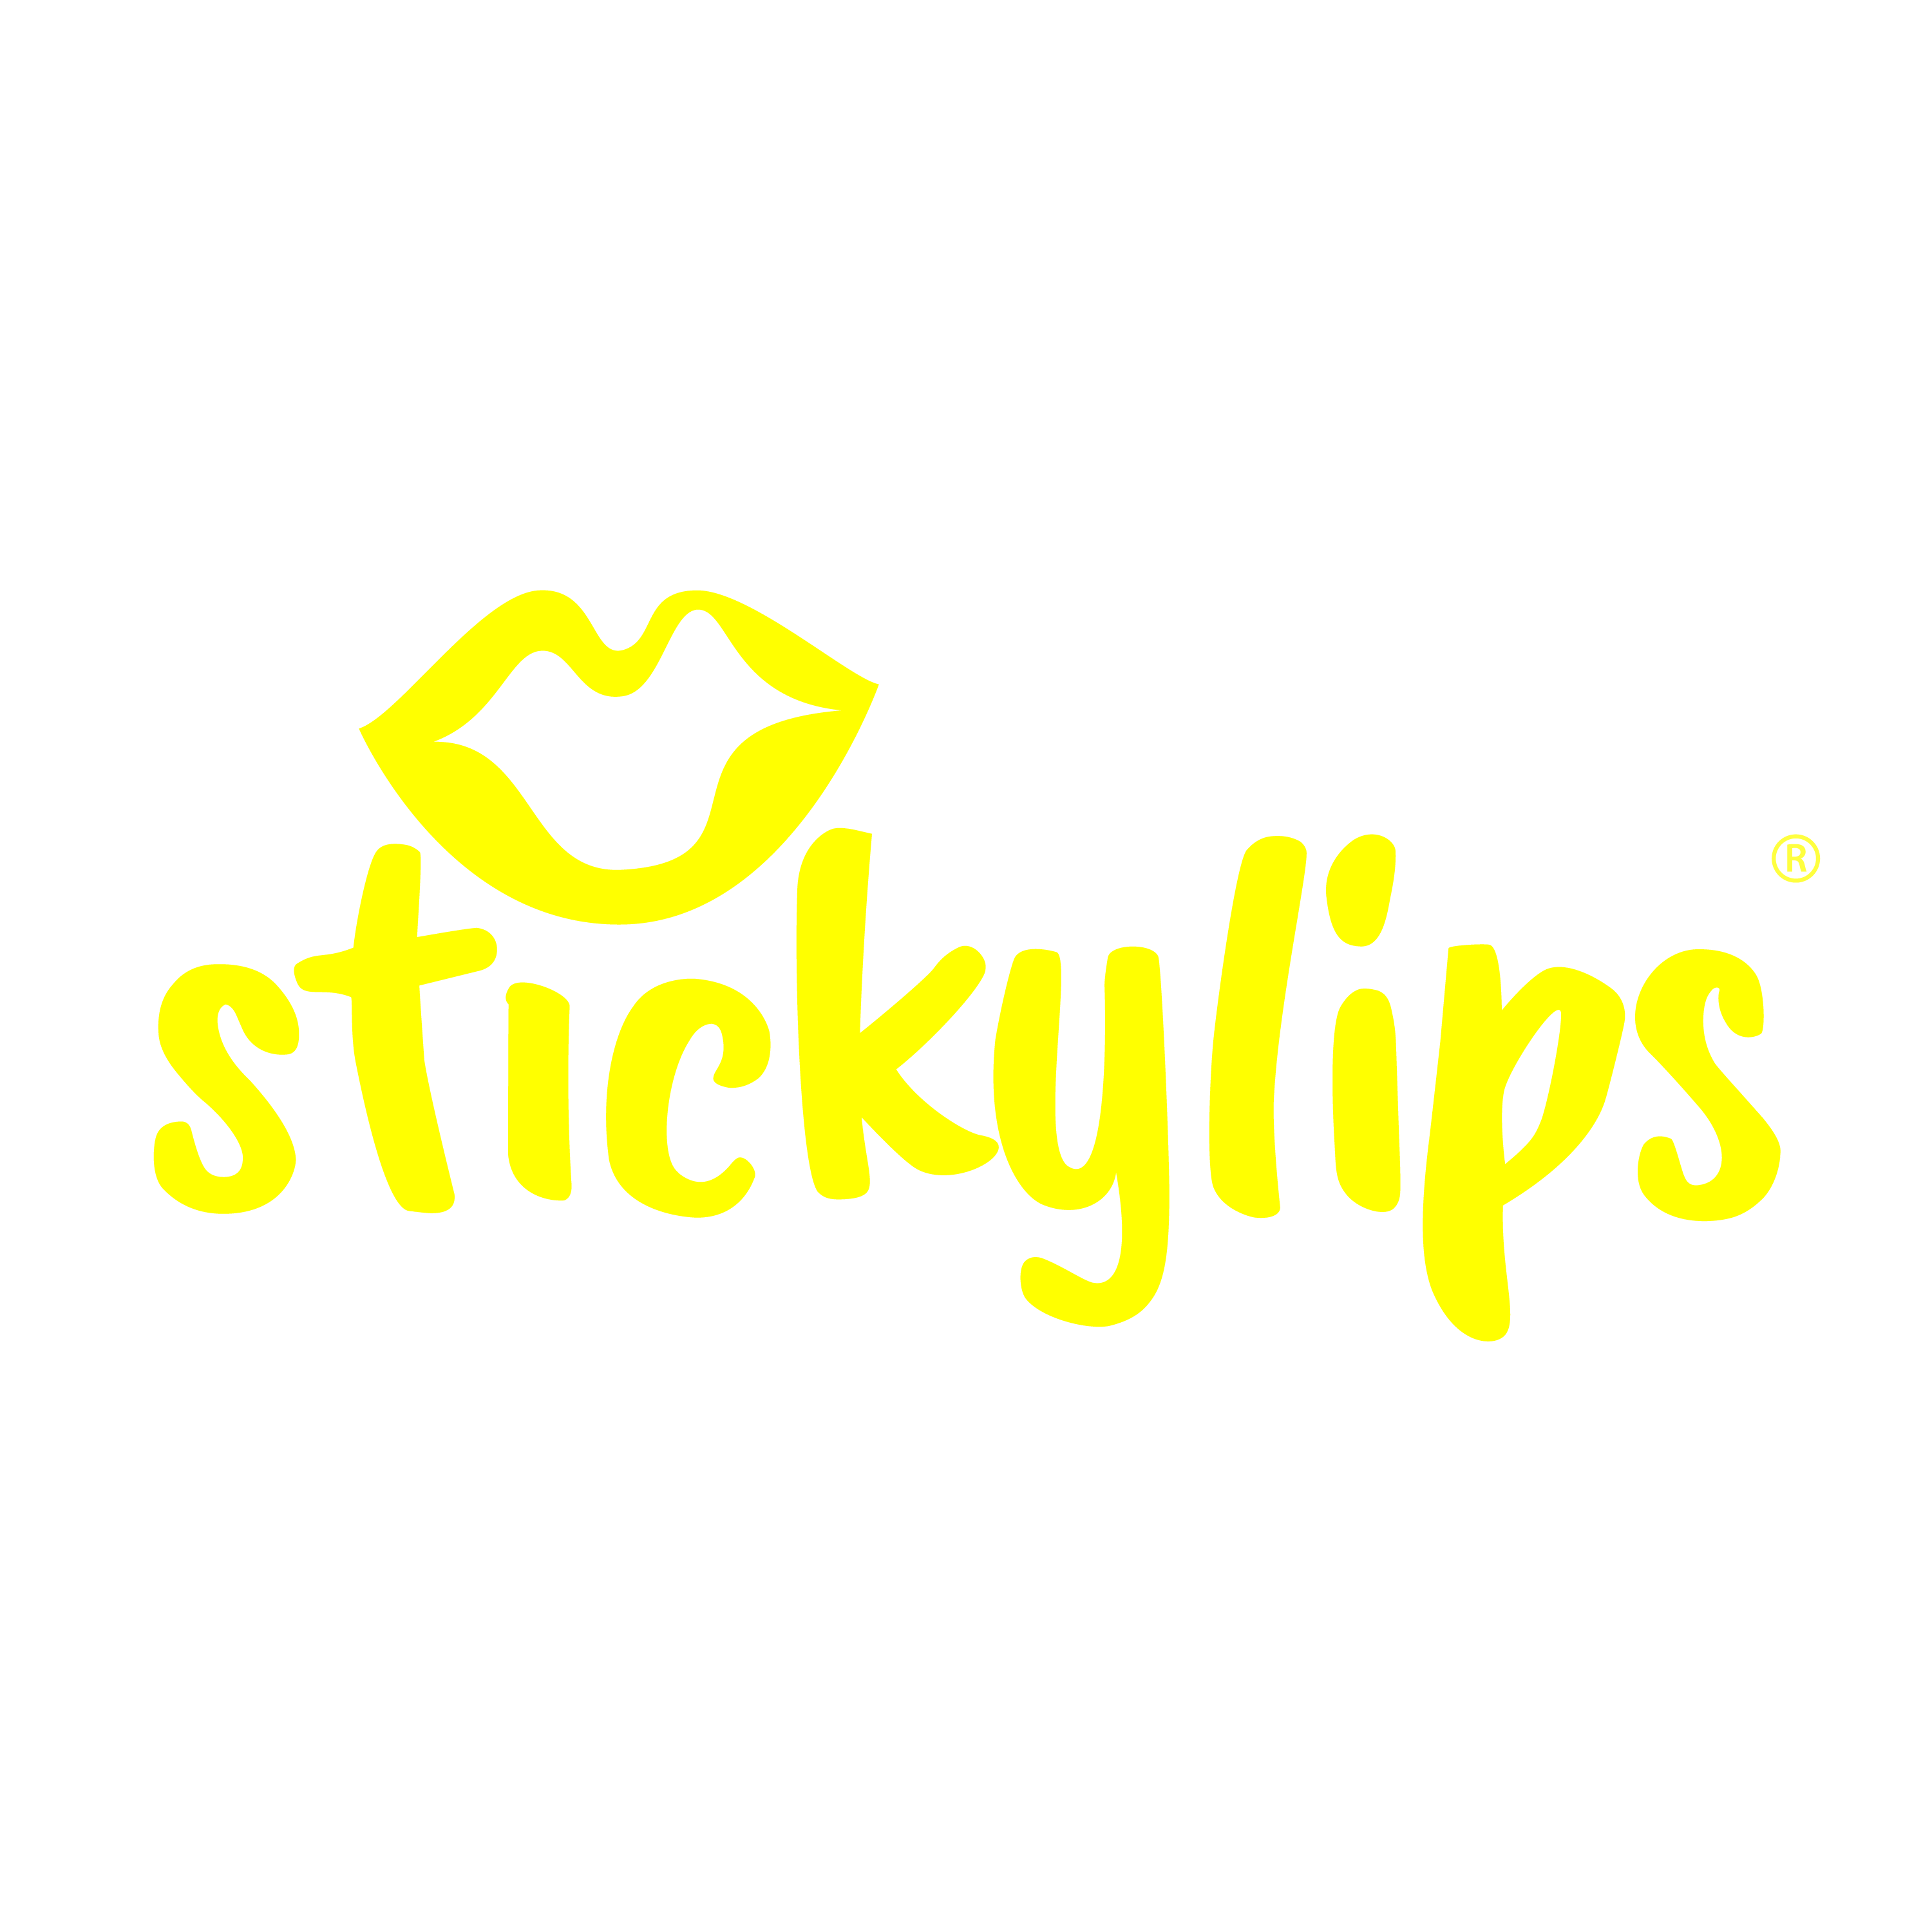 stickylips